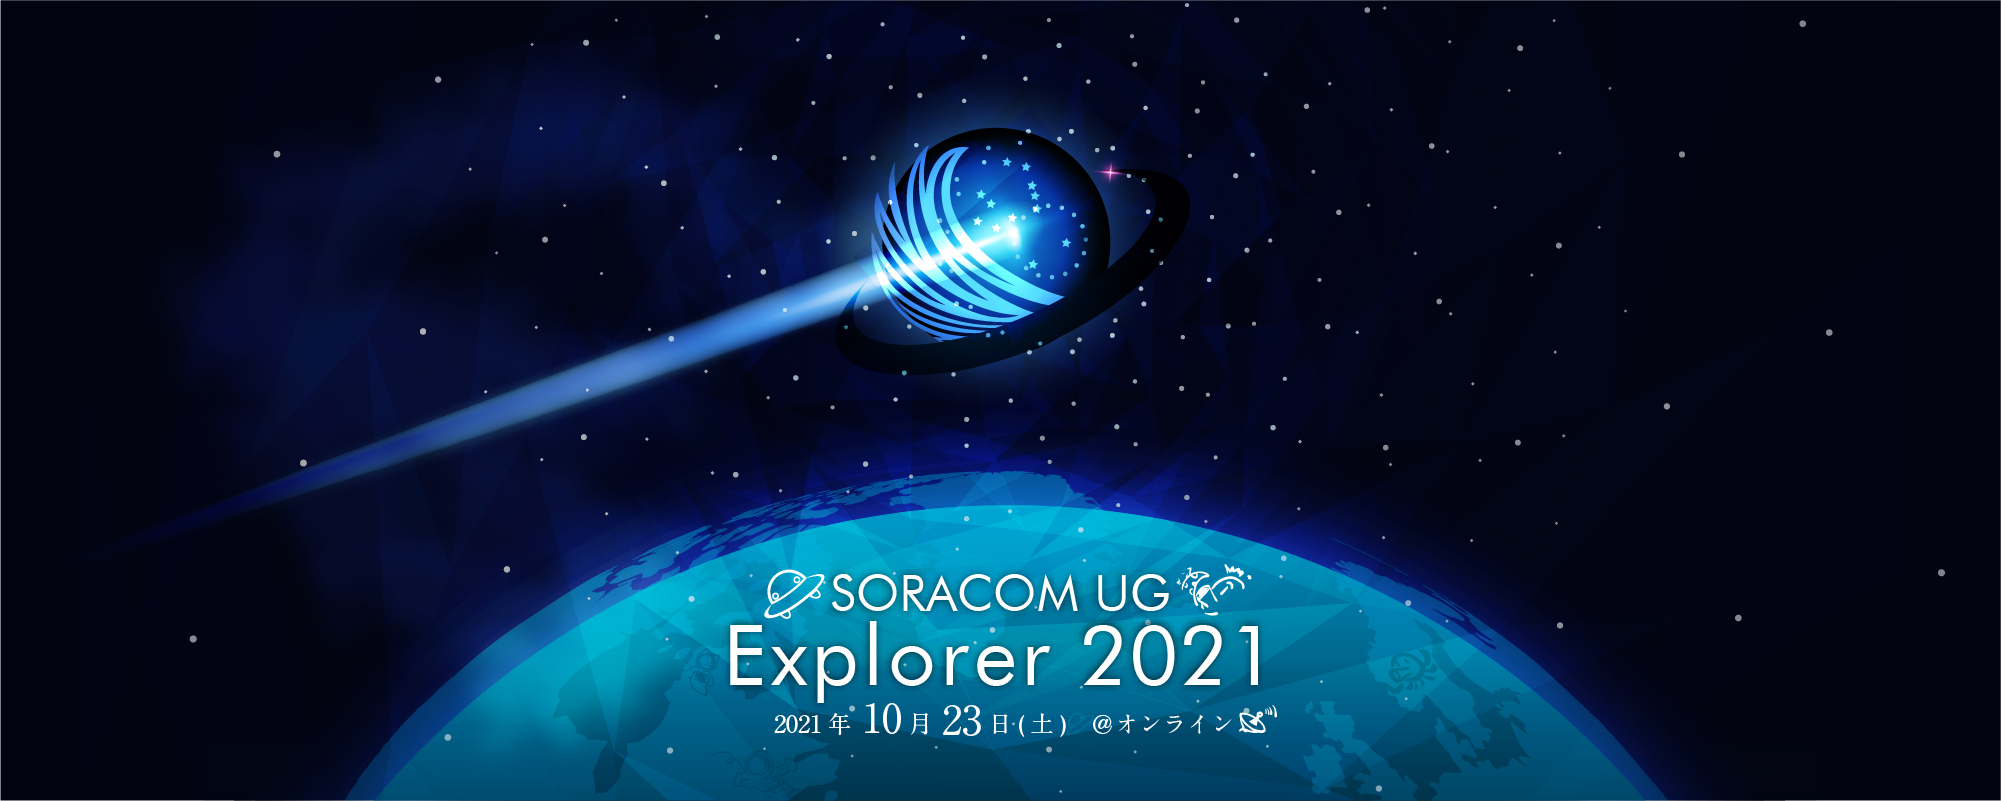 explorer2021 logo